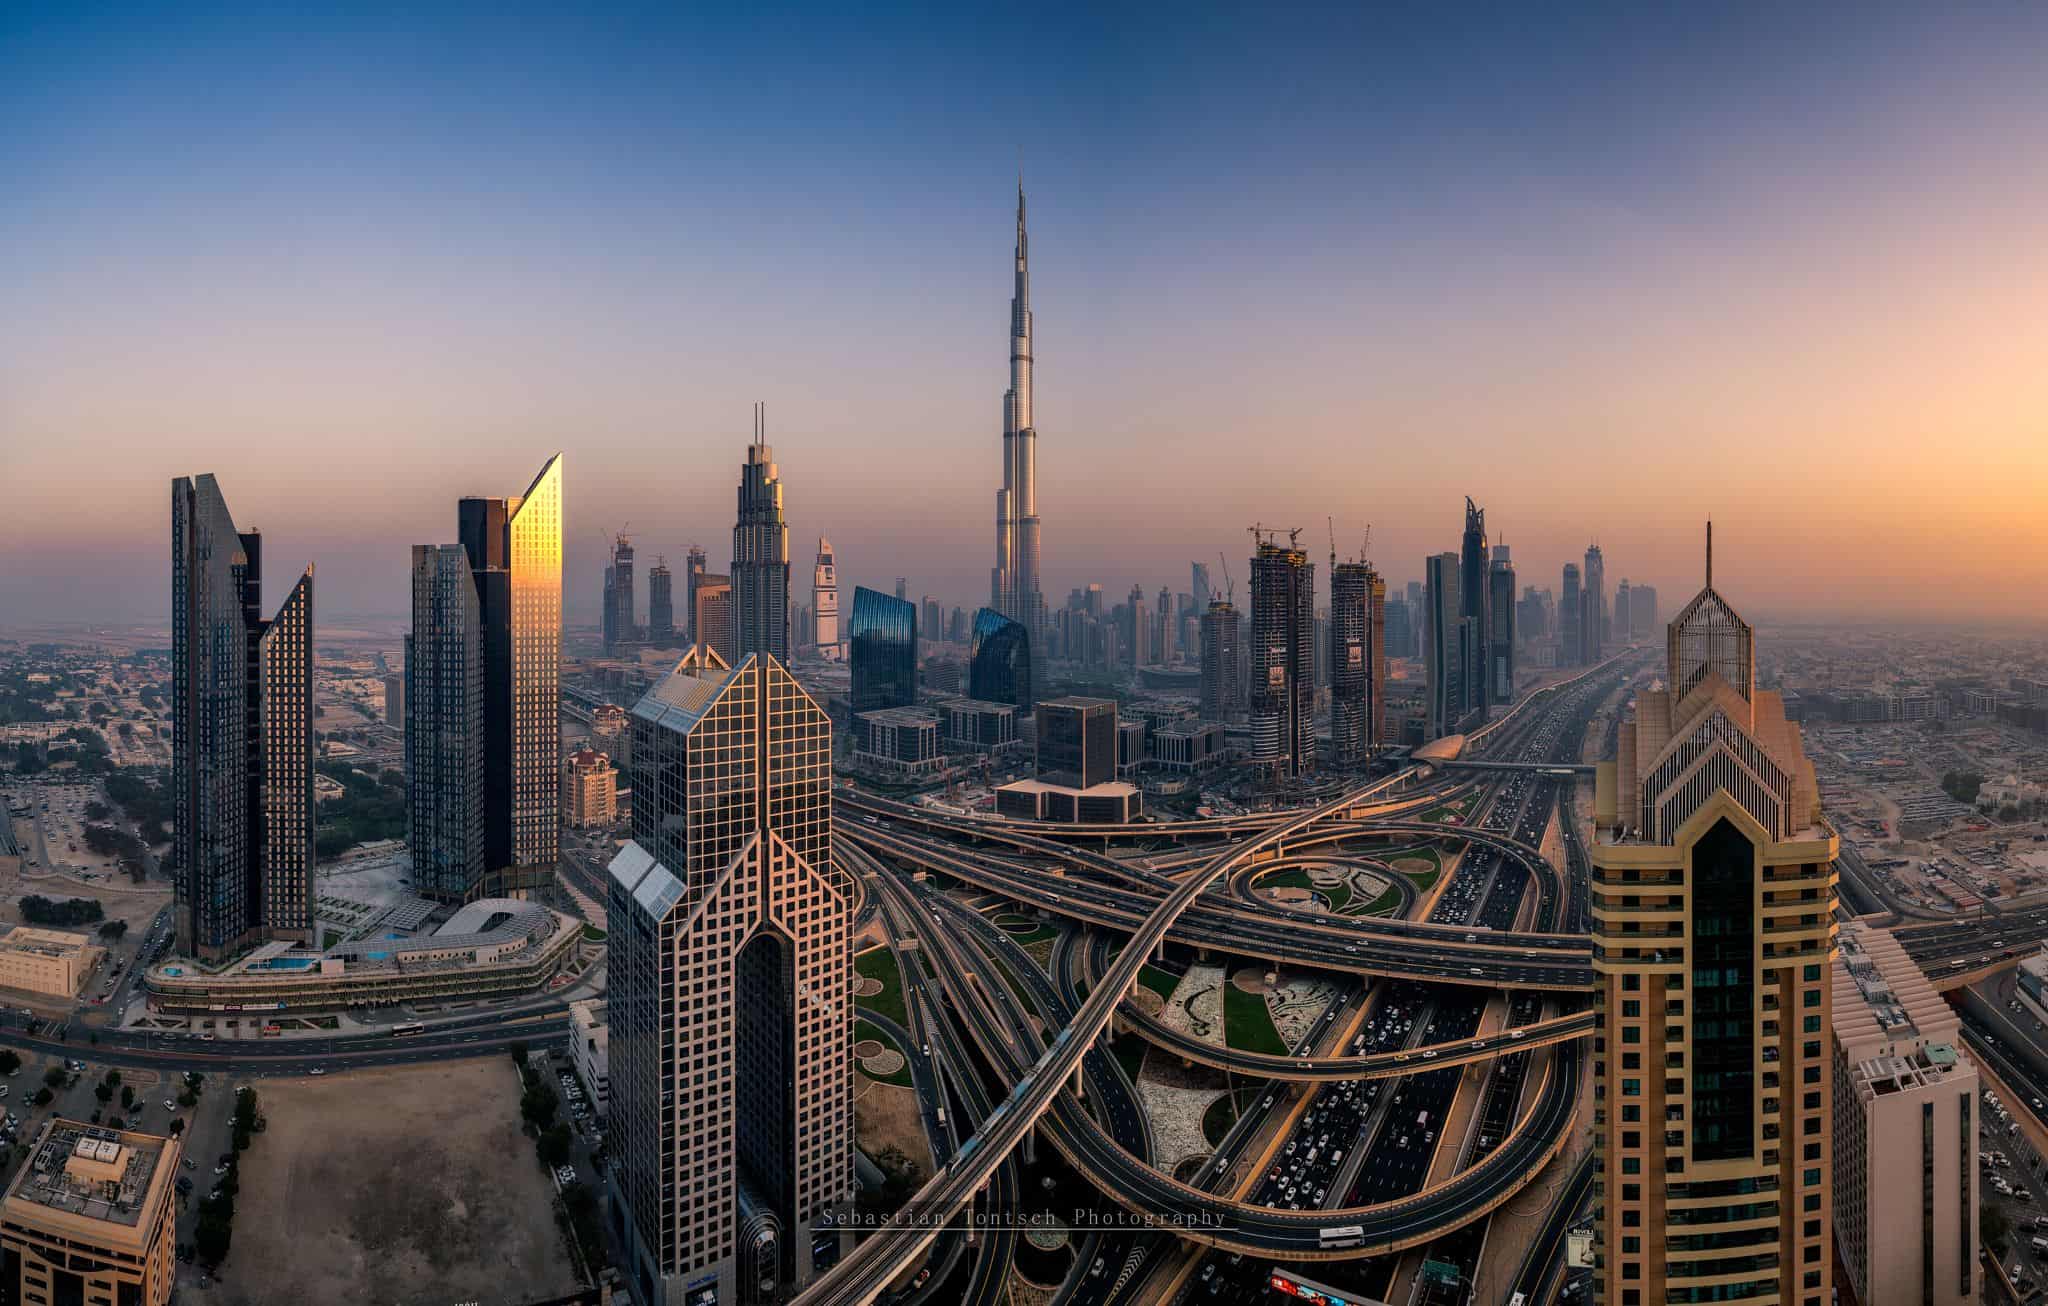 فيزا دبي وكافة المعلومات المتعلقة بتاشيرة دبي